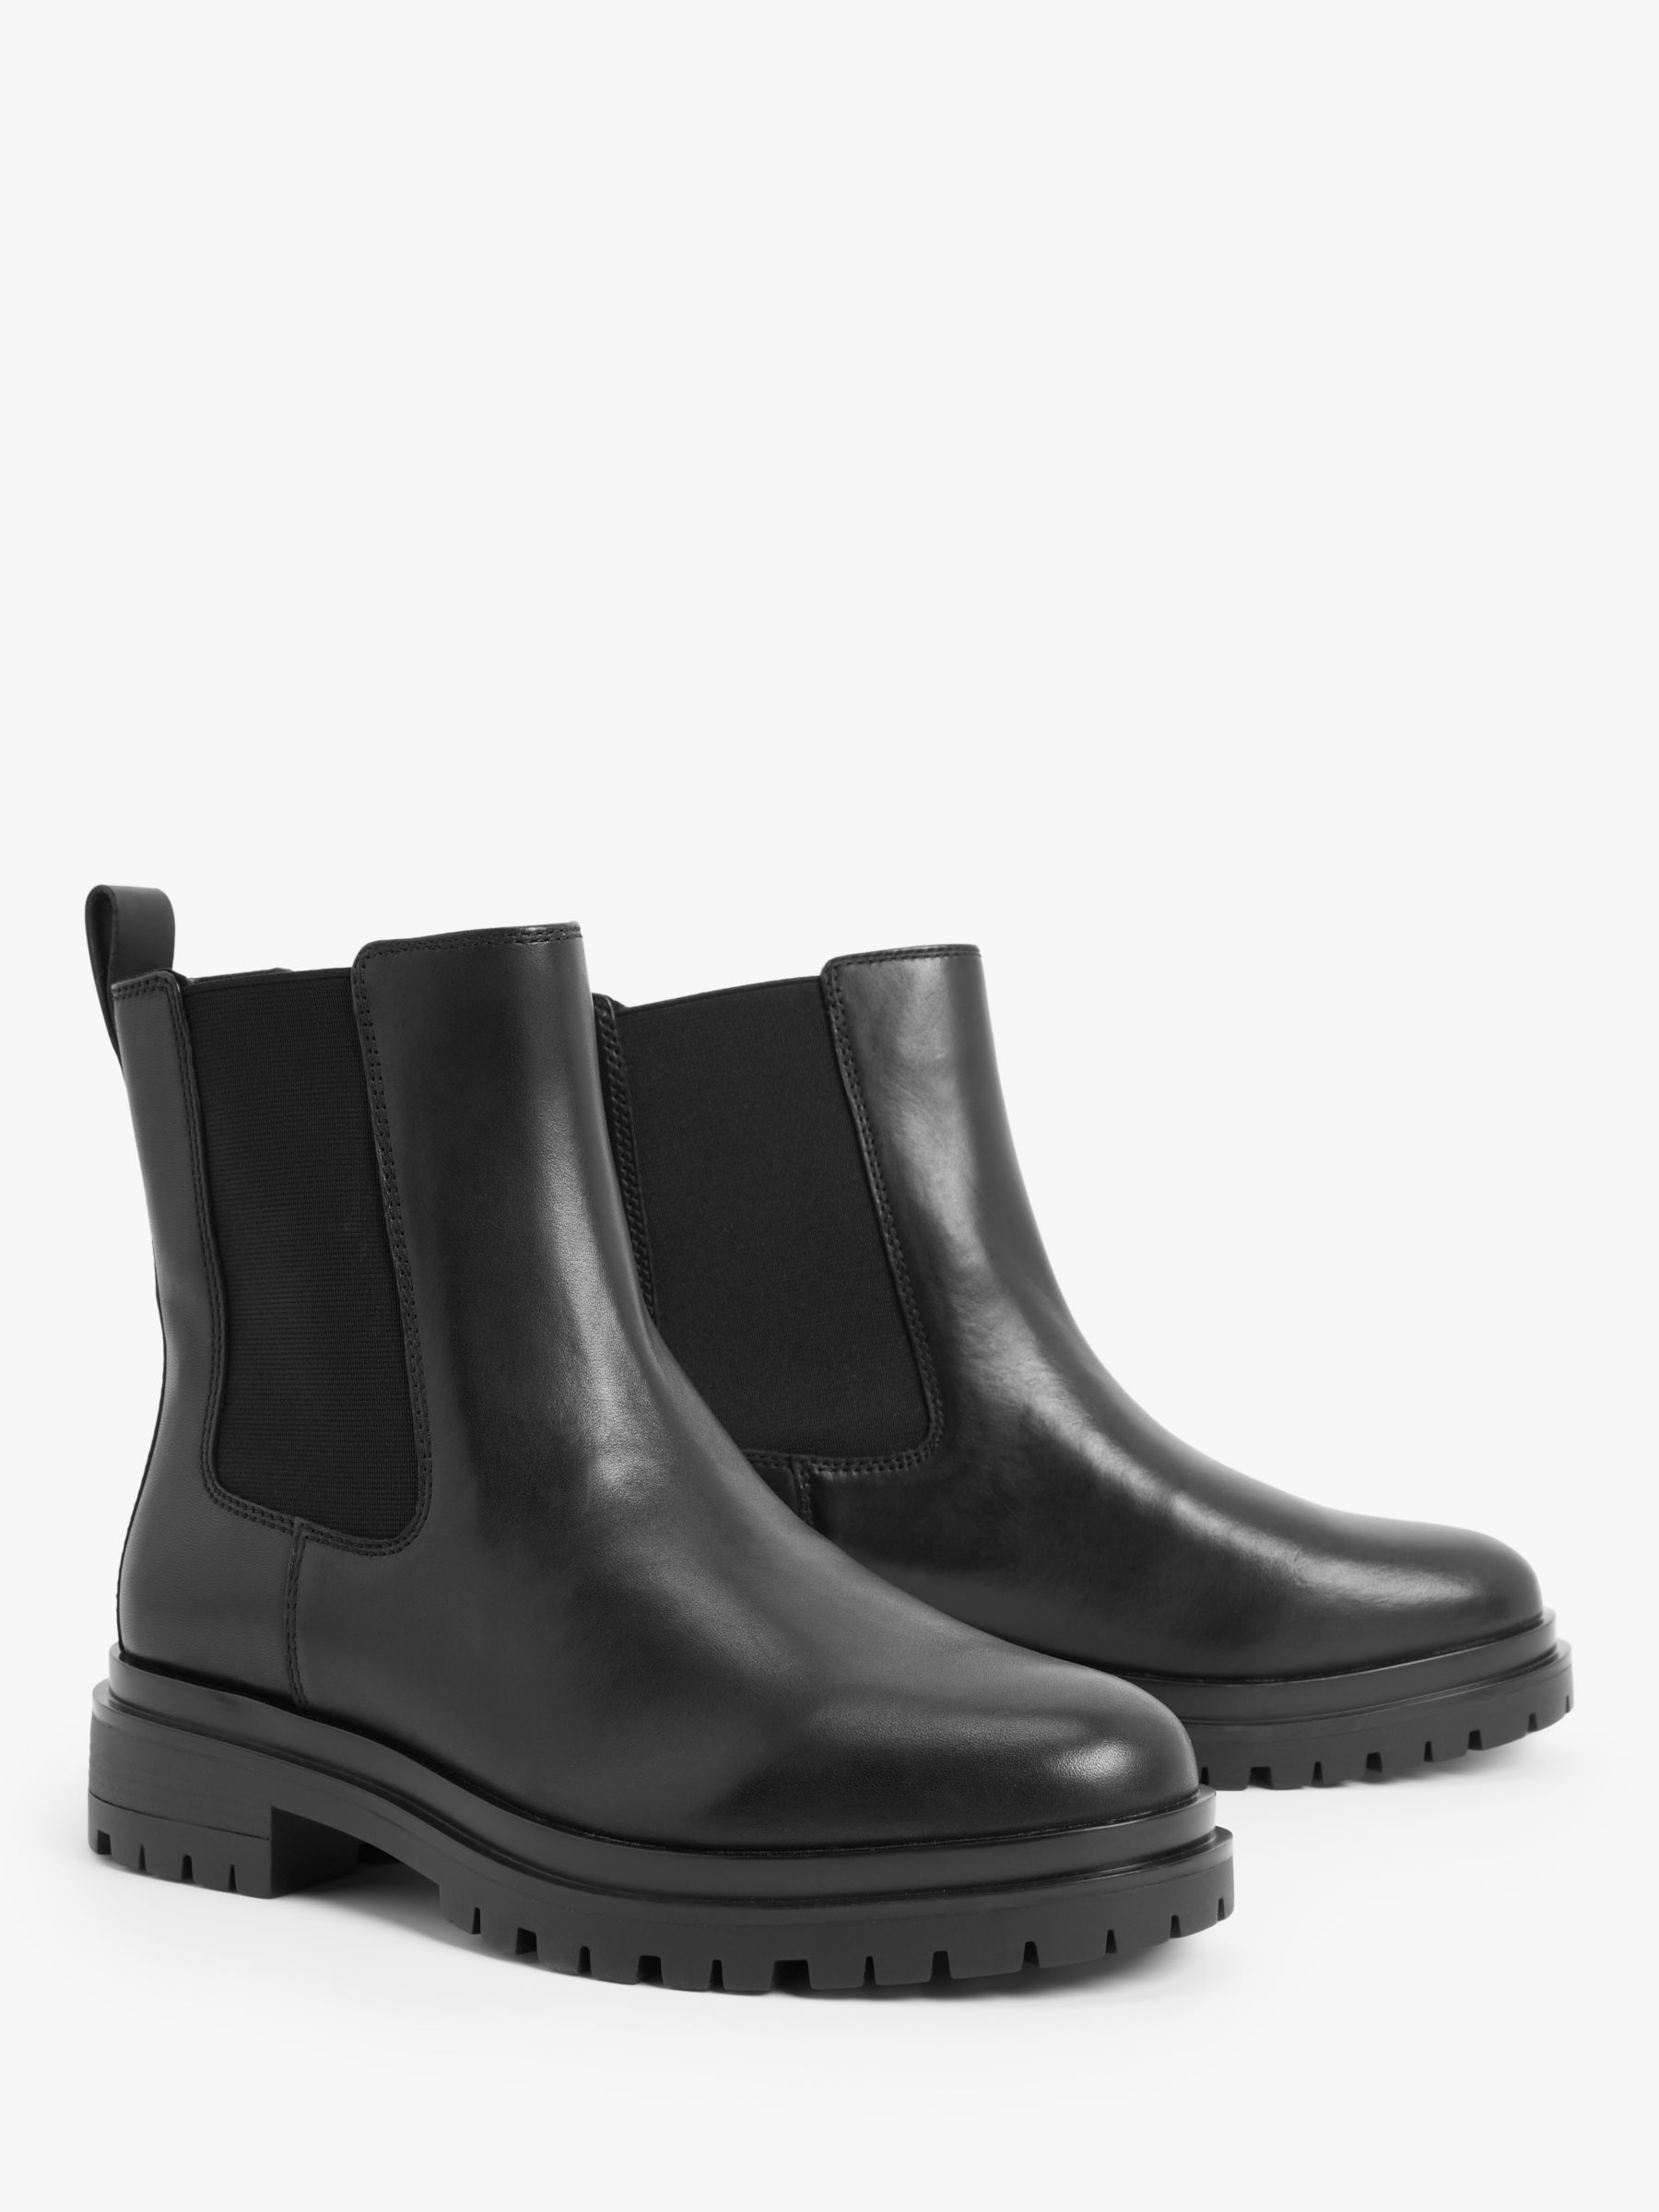 Lauren Ralph Lauren Corinne Leather Chelsea Boots, Black